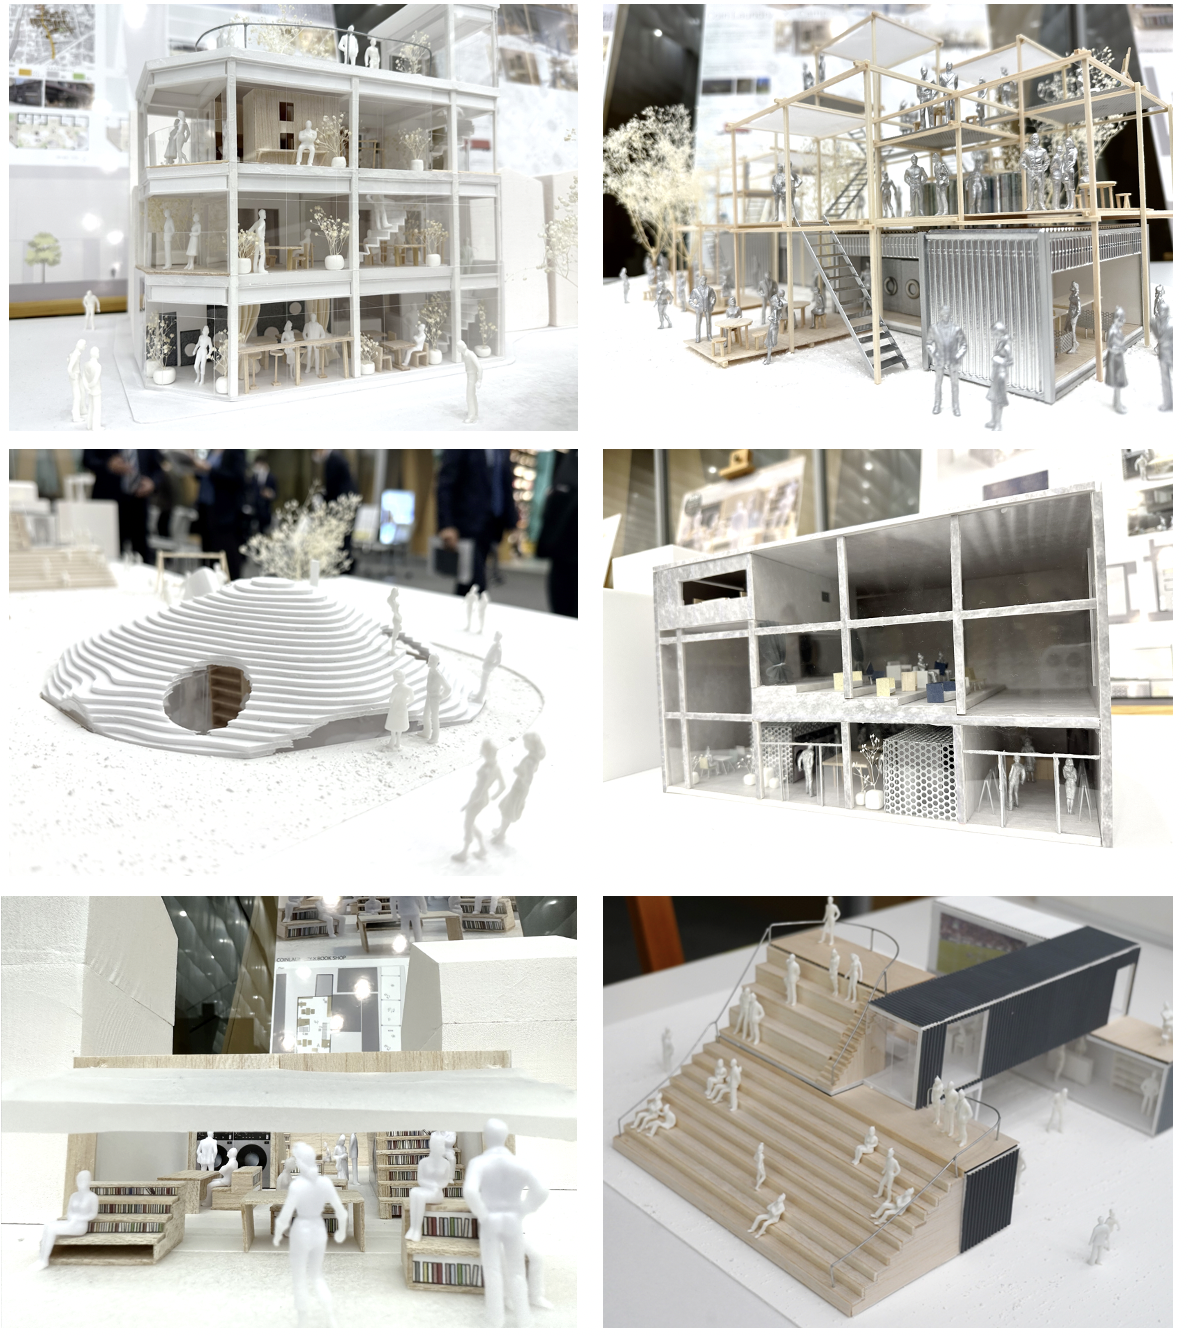 近畿大学建築学部×AQUA「コインランドリー空間デザイン」に関する共同研究最終発表会